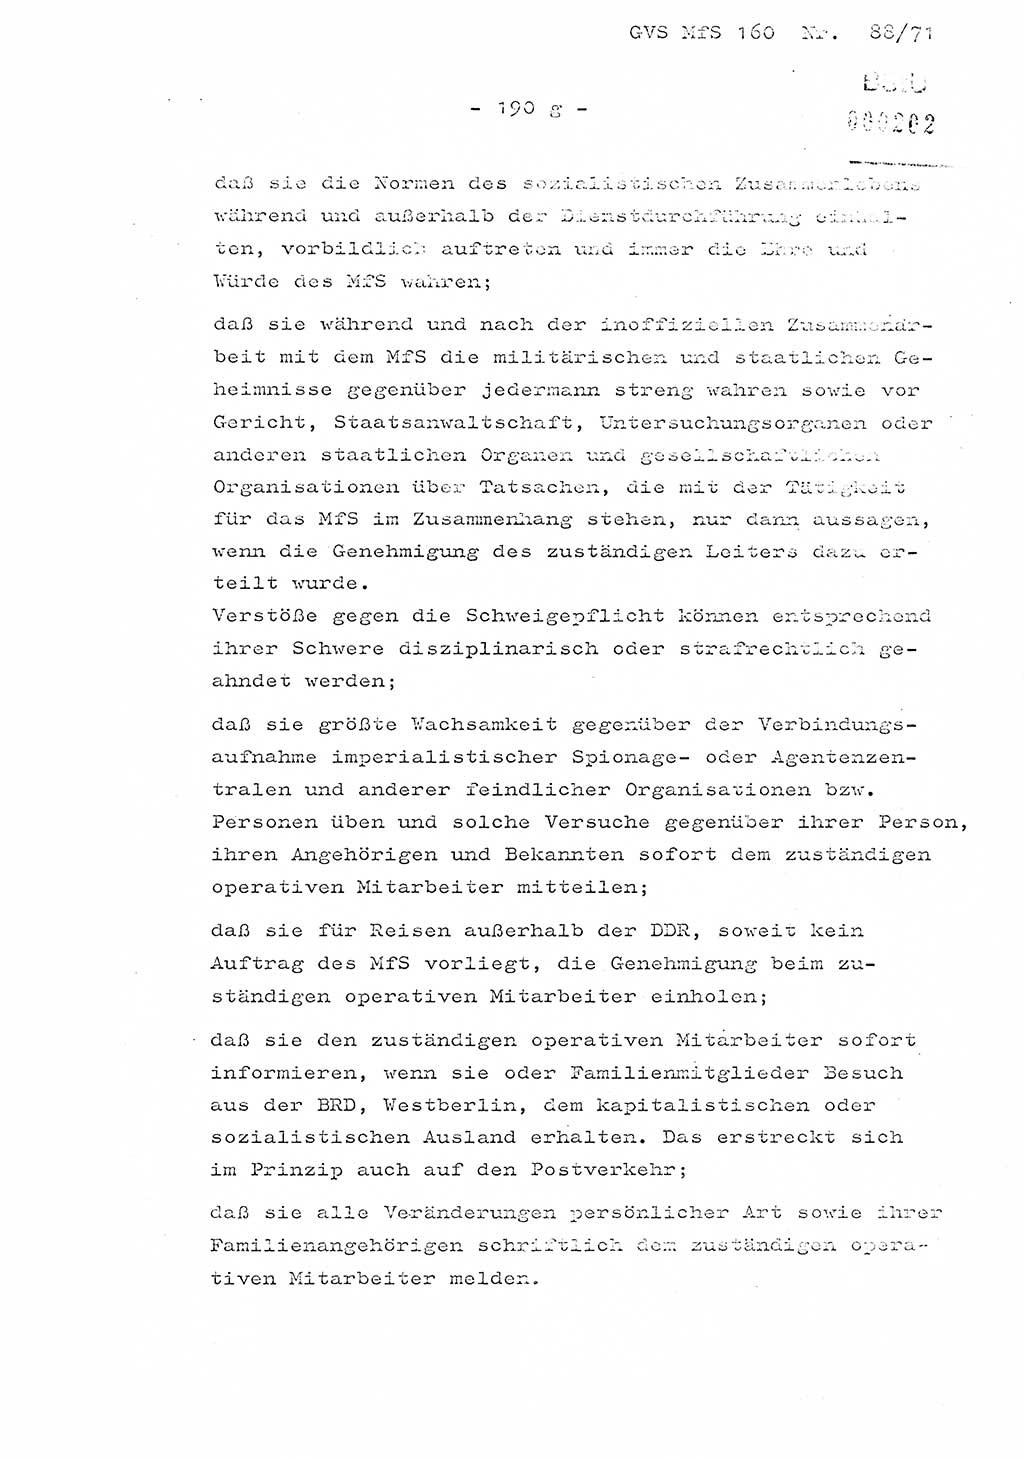 Dissertation Oberstleutnant Josef Schwarz (BV Schwerin), Major Fritz Amm (JHS), Hauptmann Peter Gräßler (JHS), Ministerium für Staatssicherheit (MfS) [Deutsche Demokratische Republik (DDR)], Juristische Hochschule (JHS), Geheime Verschlußsache (GVS) 160-88/71, Potsdam 1972, Seite 190/7 (Diss. MfS DDR JHS GVS 160-88/71 1972, S. 190/7)